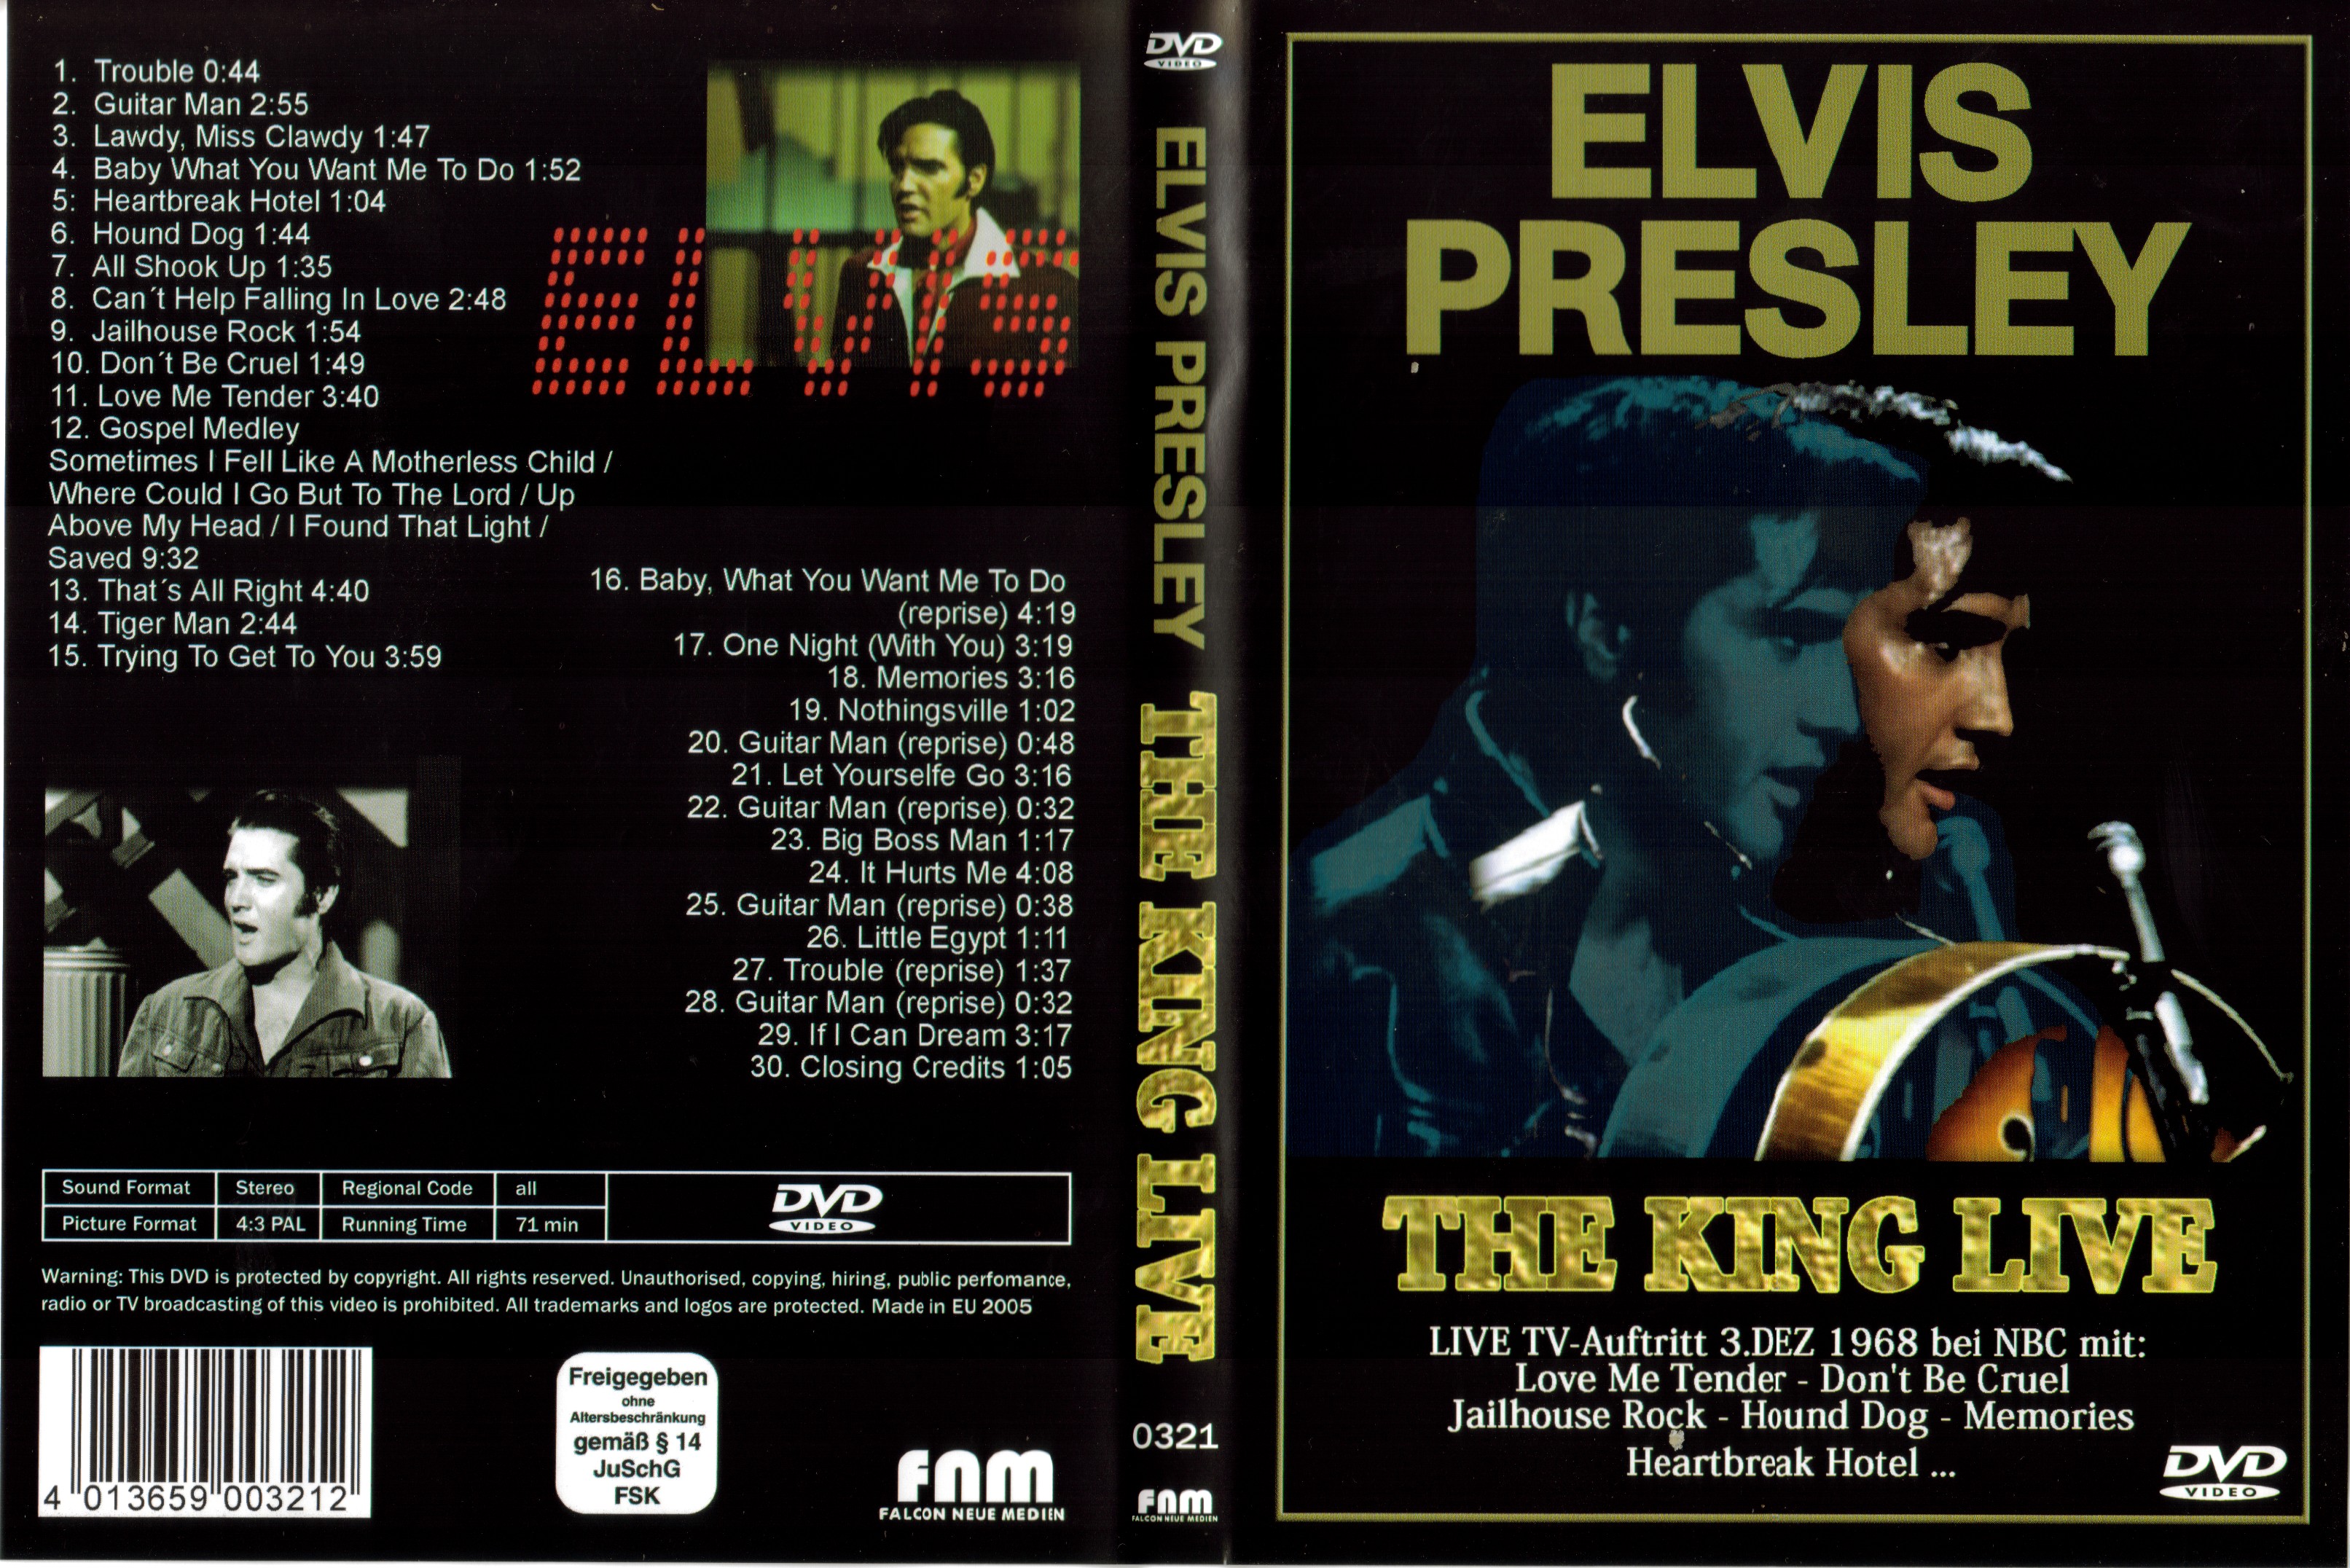 Jaquette DVD Elvis Presley The king live